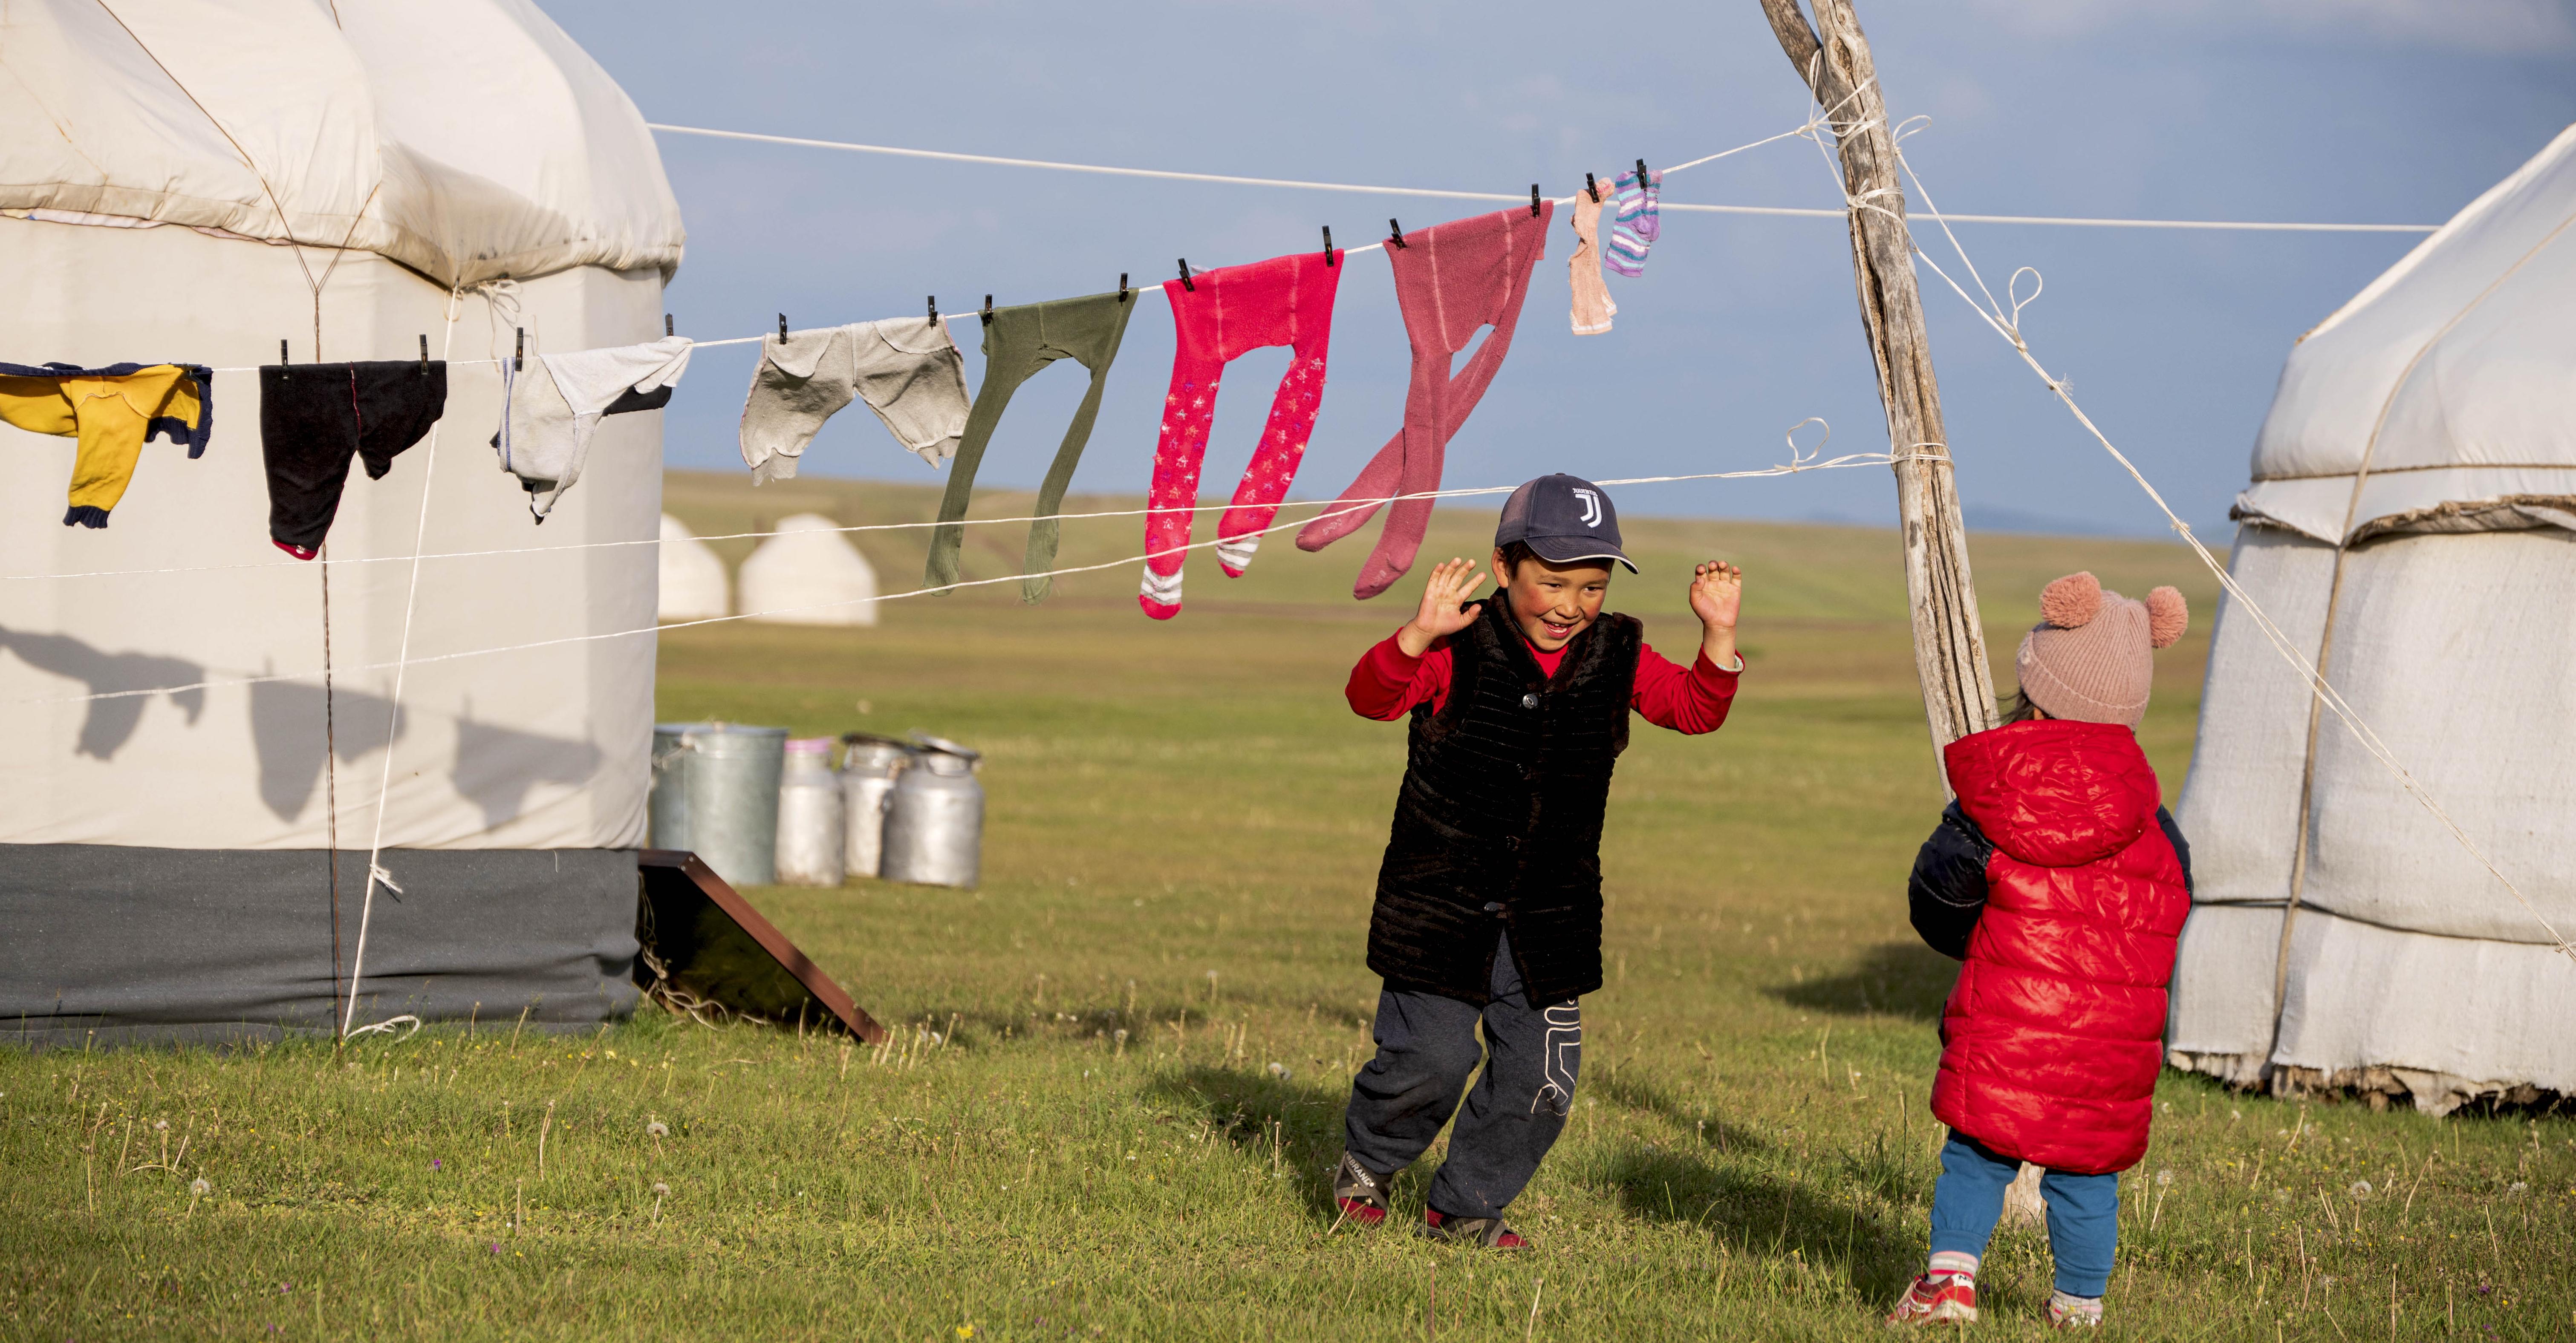 Laimutės Kurienės fotografijų paroda „Kirgizijos šiandiena“